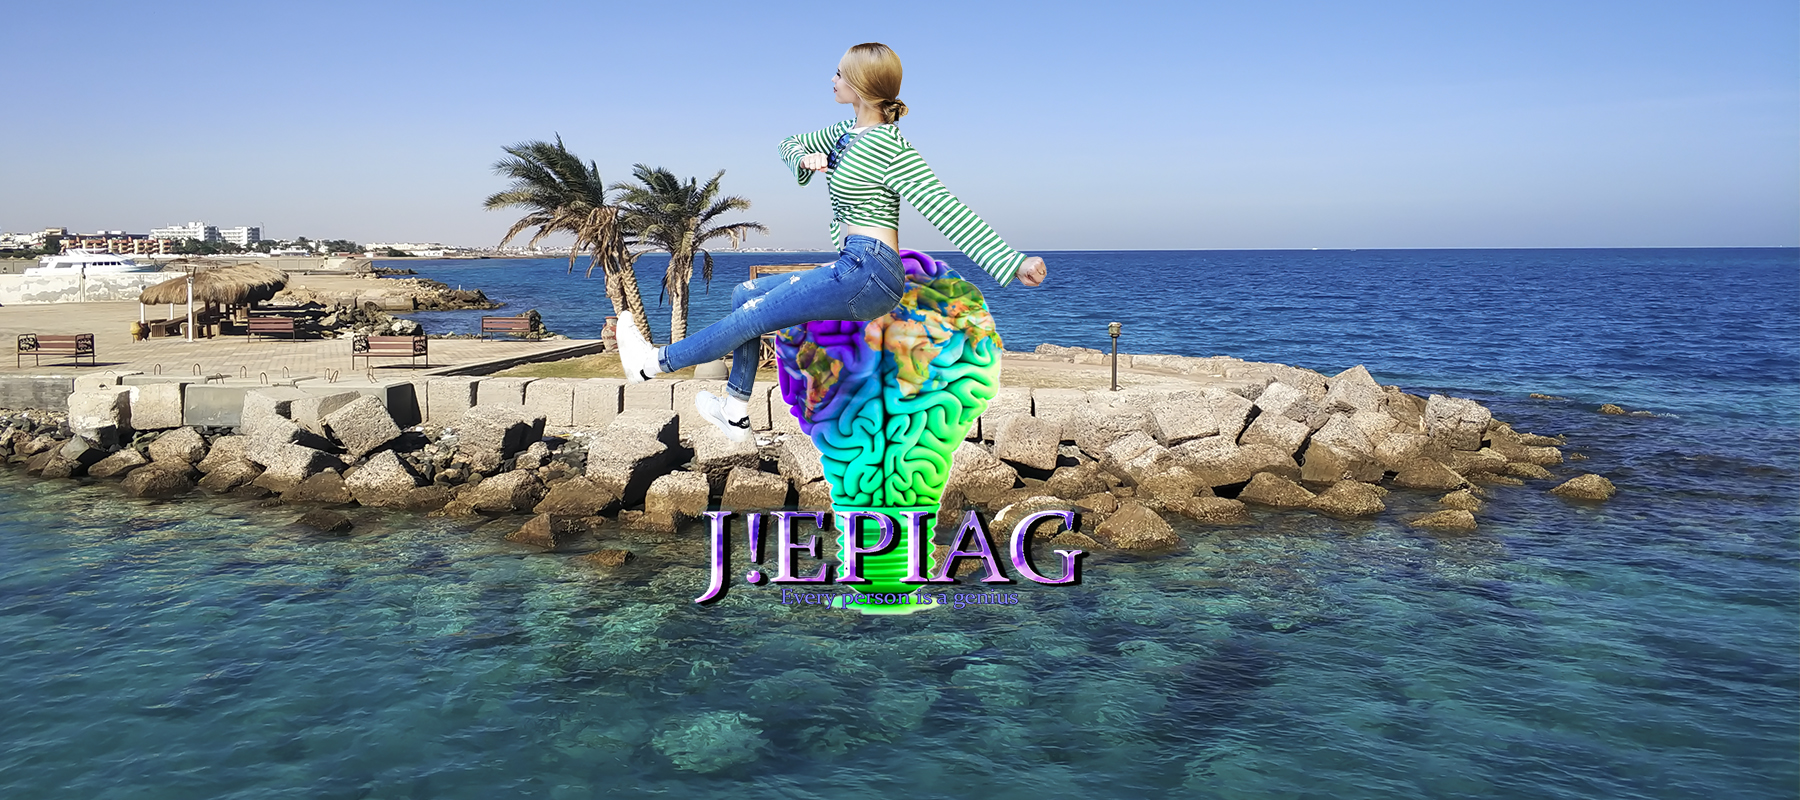 JEPIAG , jepiag , journal every person is a genius , Блог о путешествиях и психологии , самостоятельные путешествия, осознанное путешествие, психолог Киев, Валерия Моденко, Египет